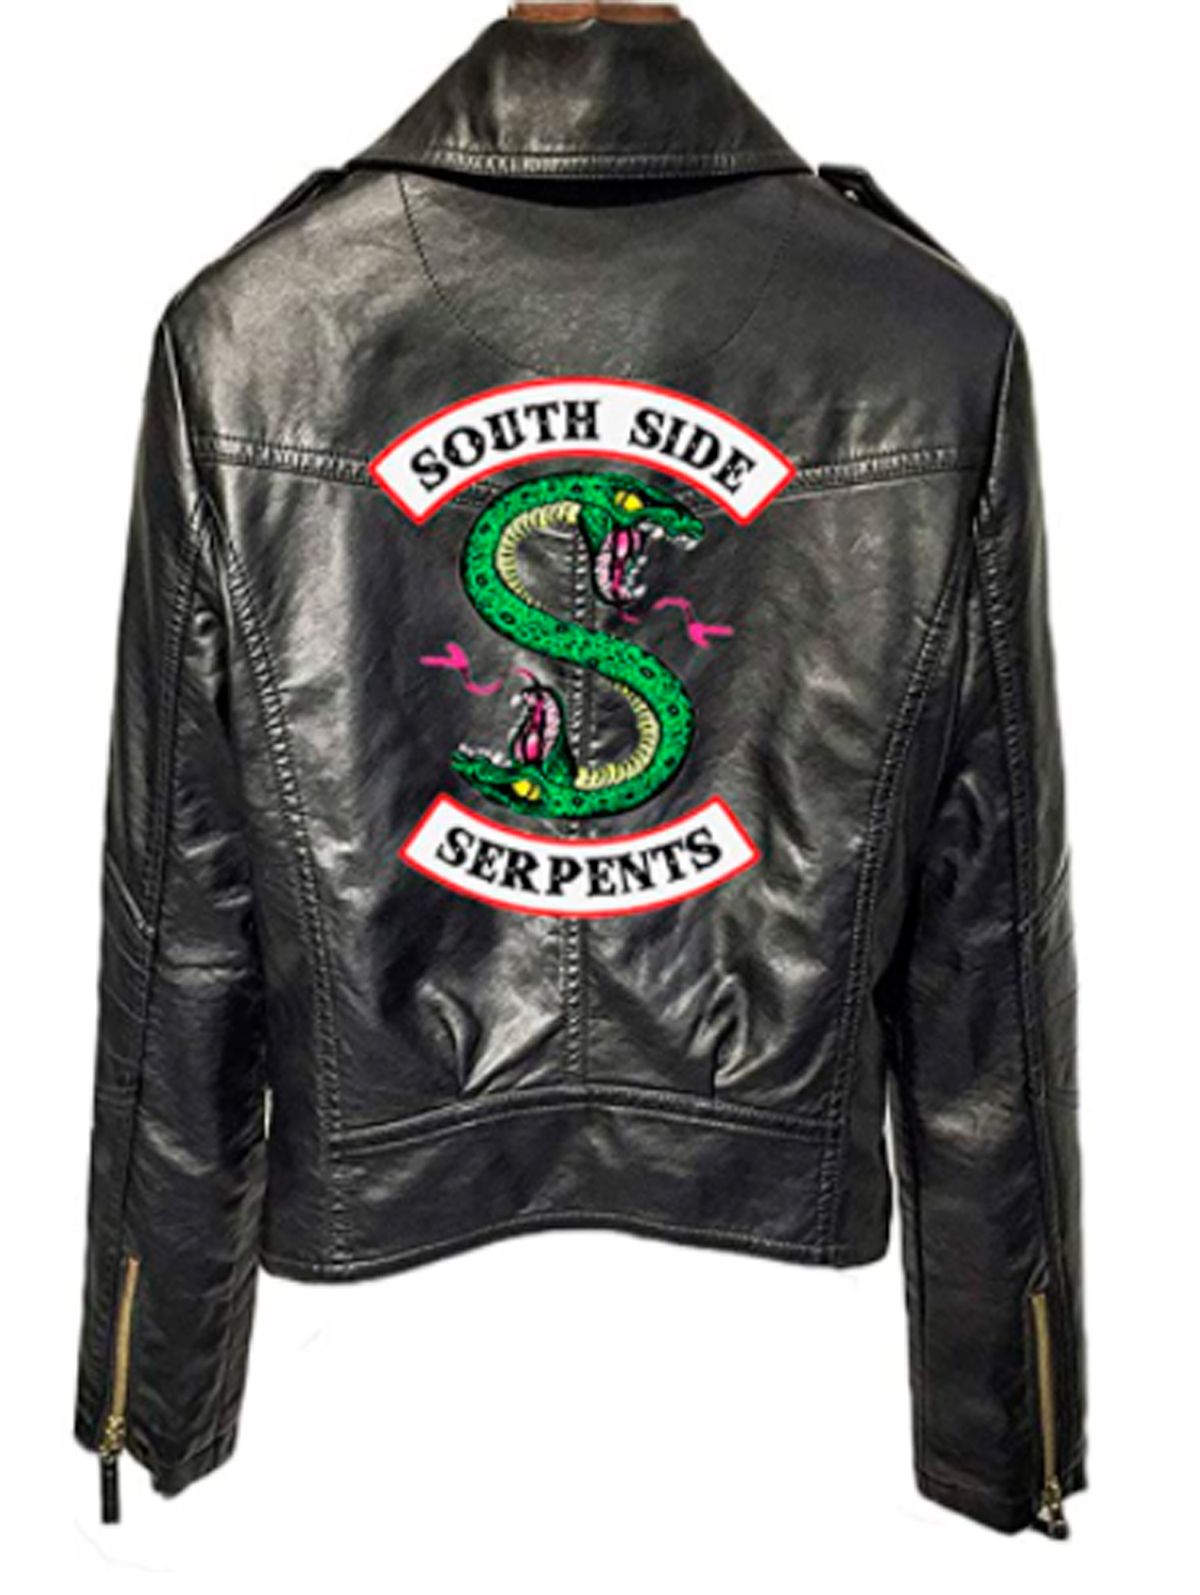 La chaqueta de Serpientes de Riverdale, por menos de 40 euros